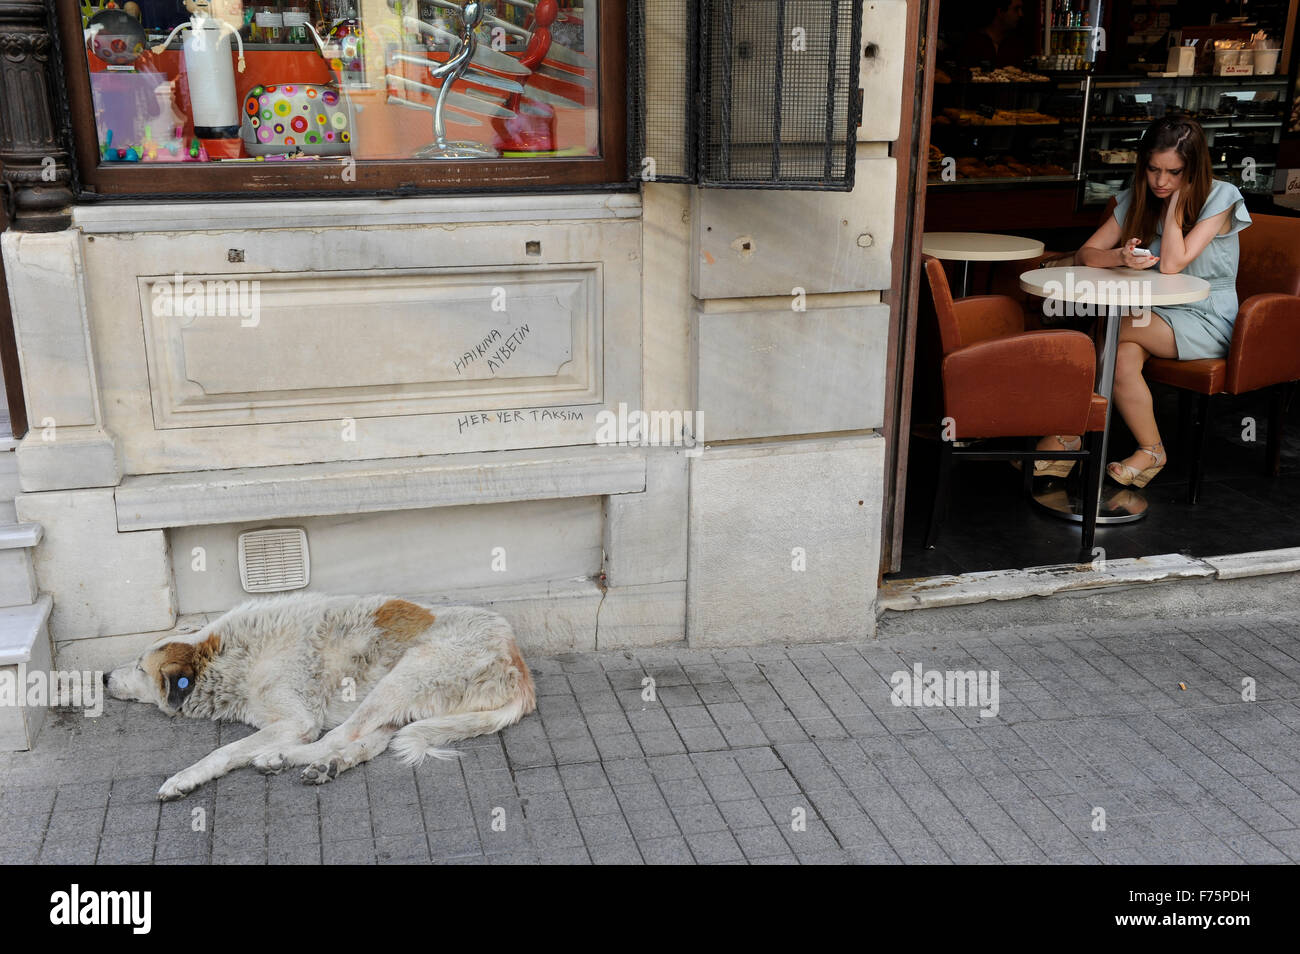 TURQUIE Istanbul, rue Istiklal, chien de rue et café avec le slogan mural Haikina Aybetin-Her Taksim Banque D'Images